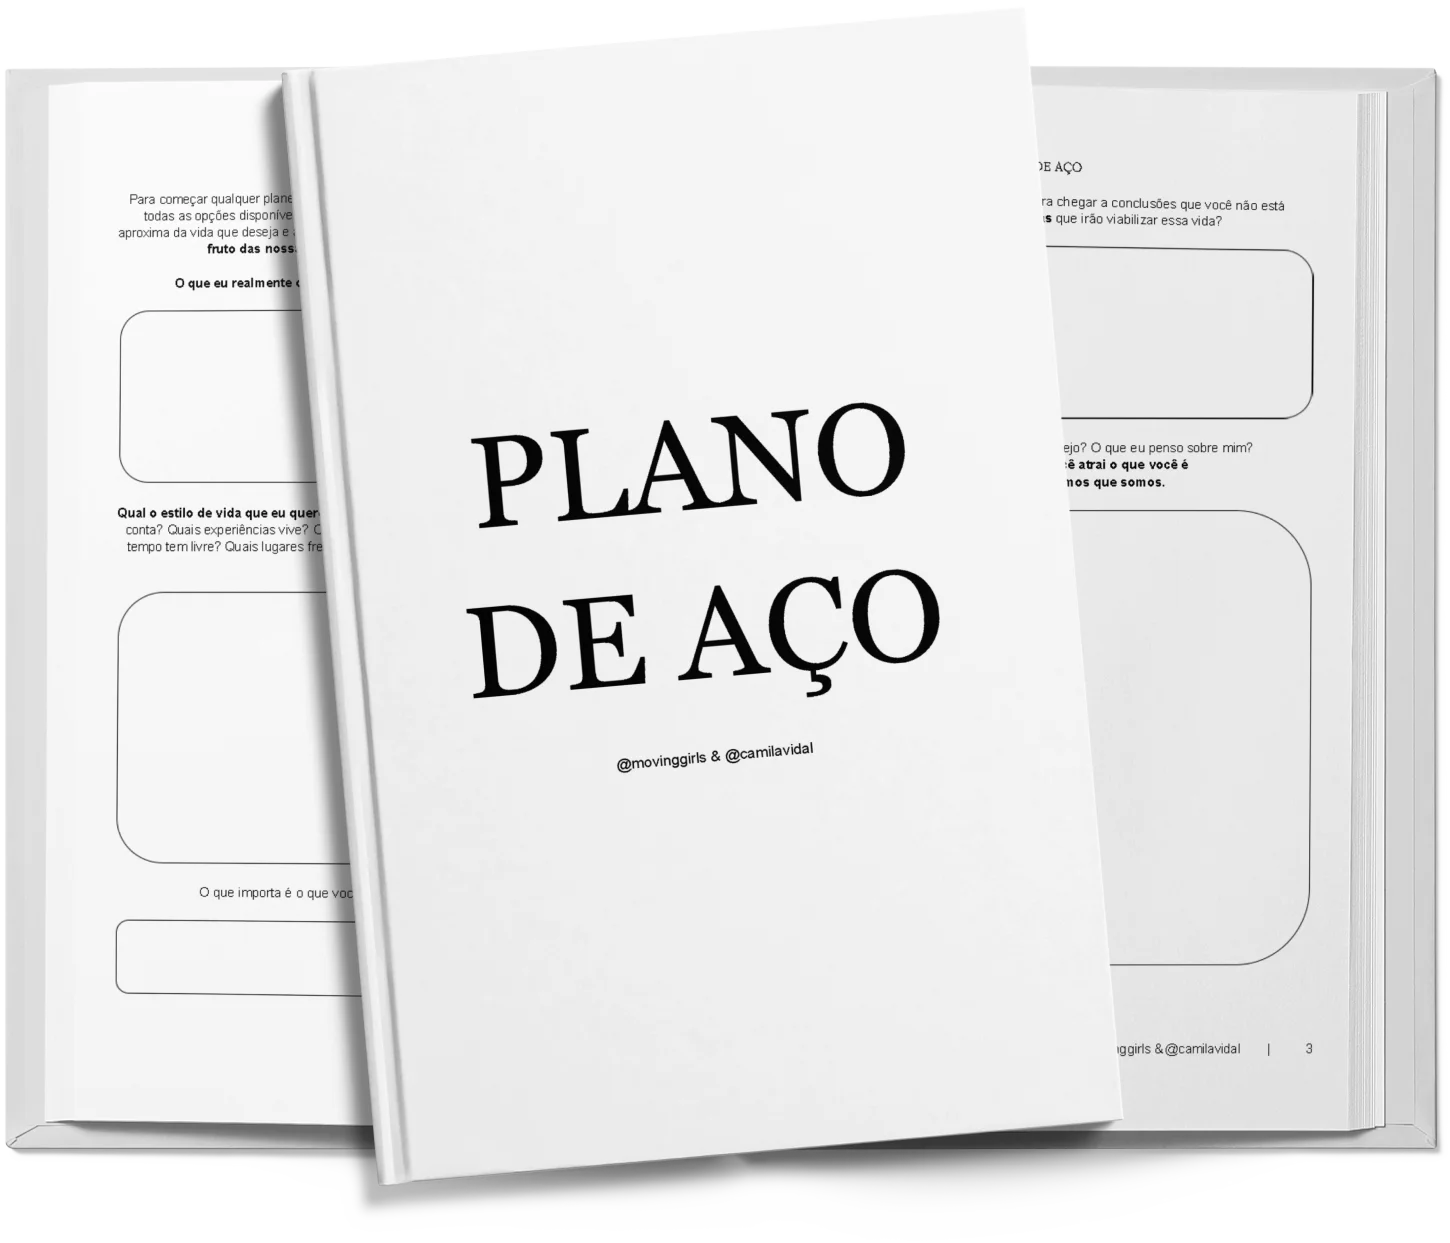 workbook_plano_de_aco